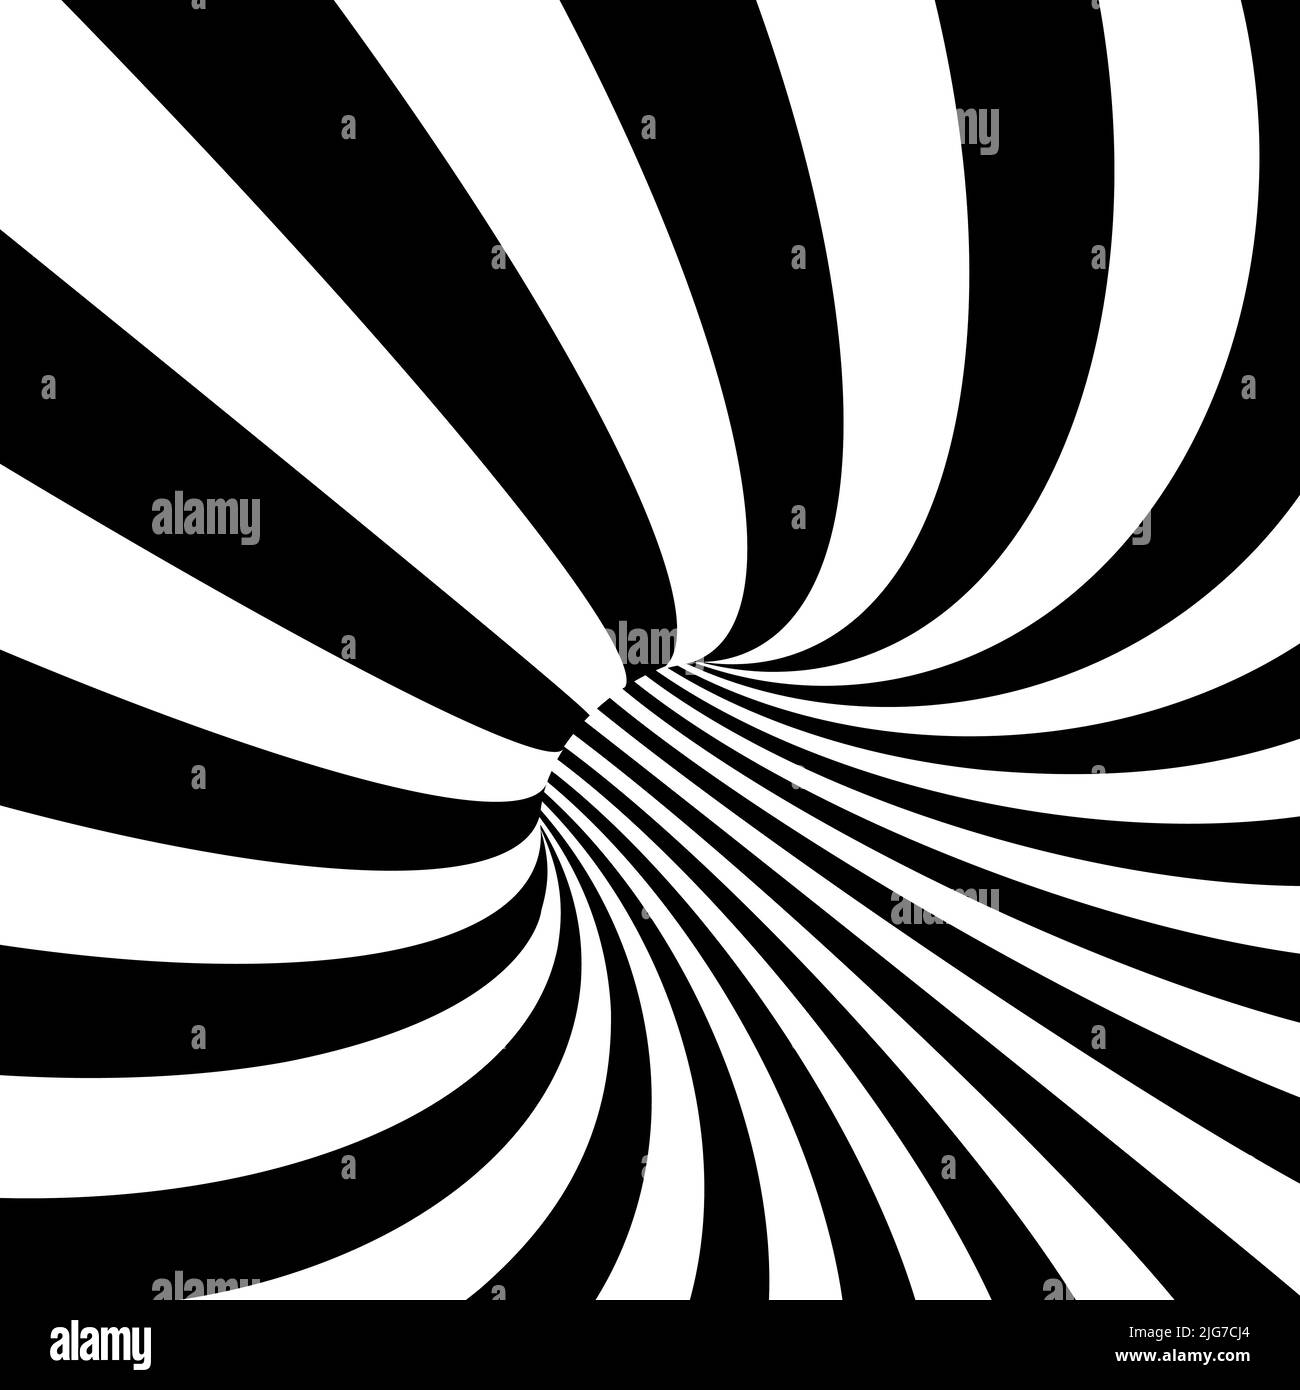 Illusion optique noir et blanc. Arrière-plan abstrait, tunnel agrégé par bandes.vecteur Illustration de Vecteur